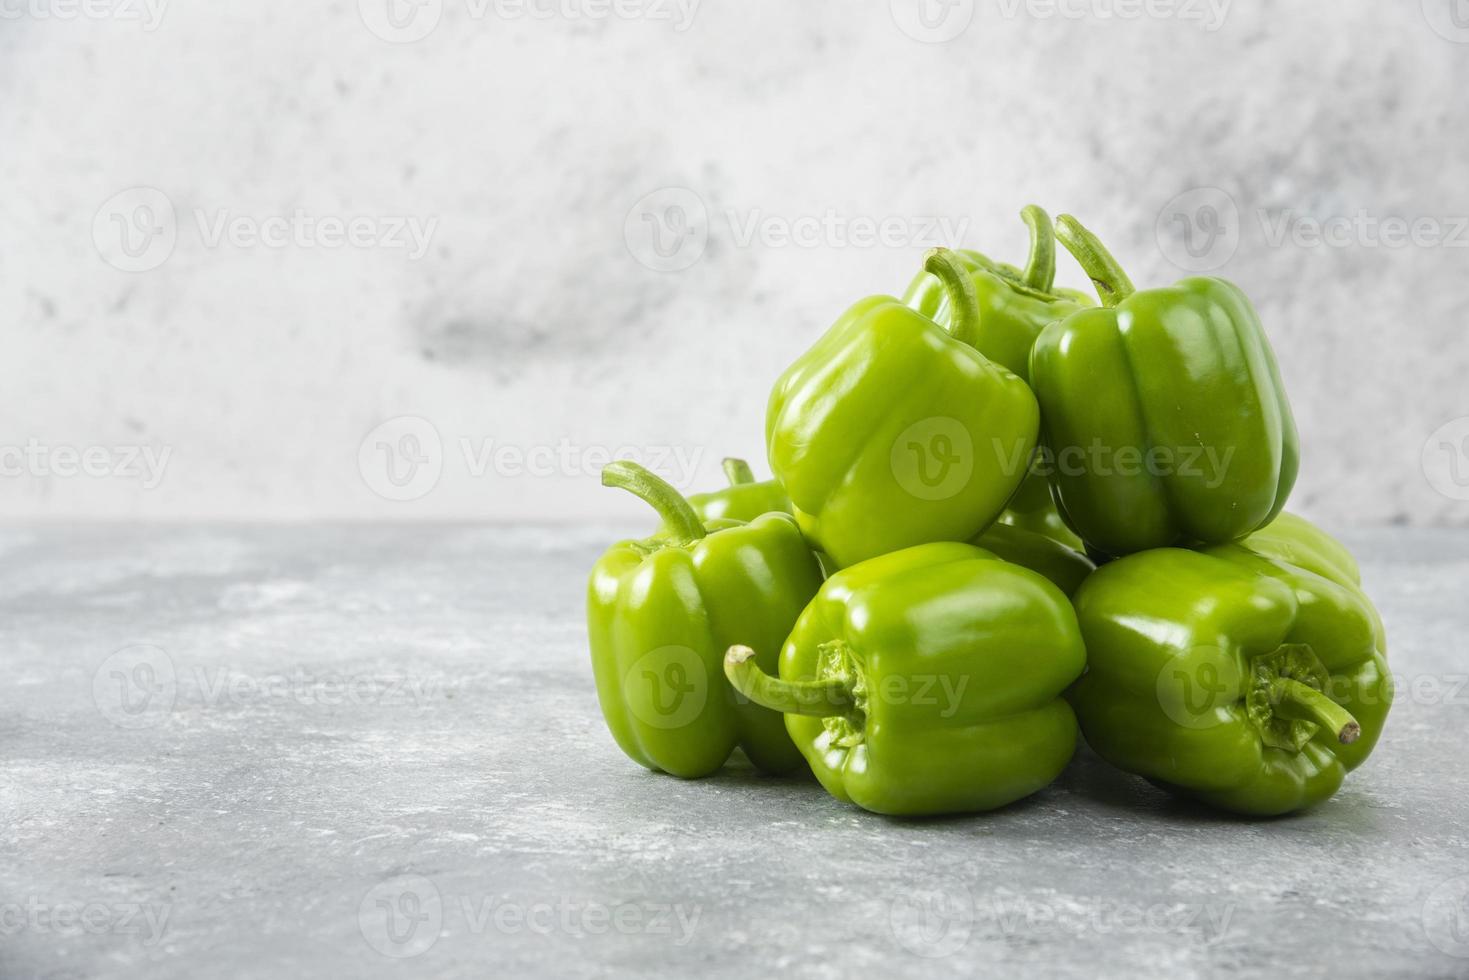 frische grüne Paprika auf Steinhintergrund gelegt foto